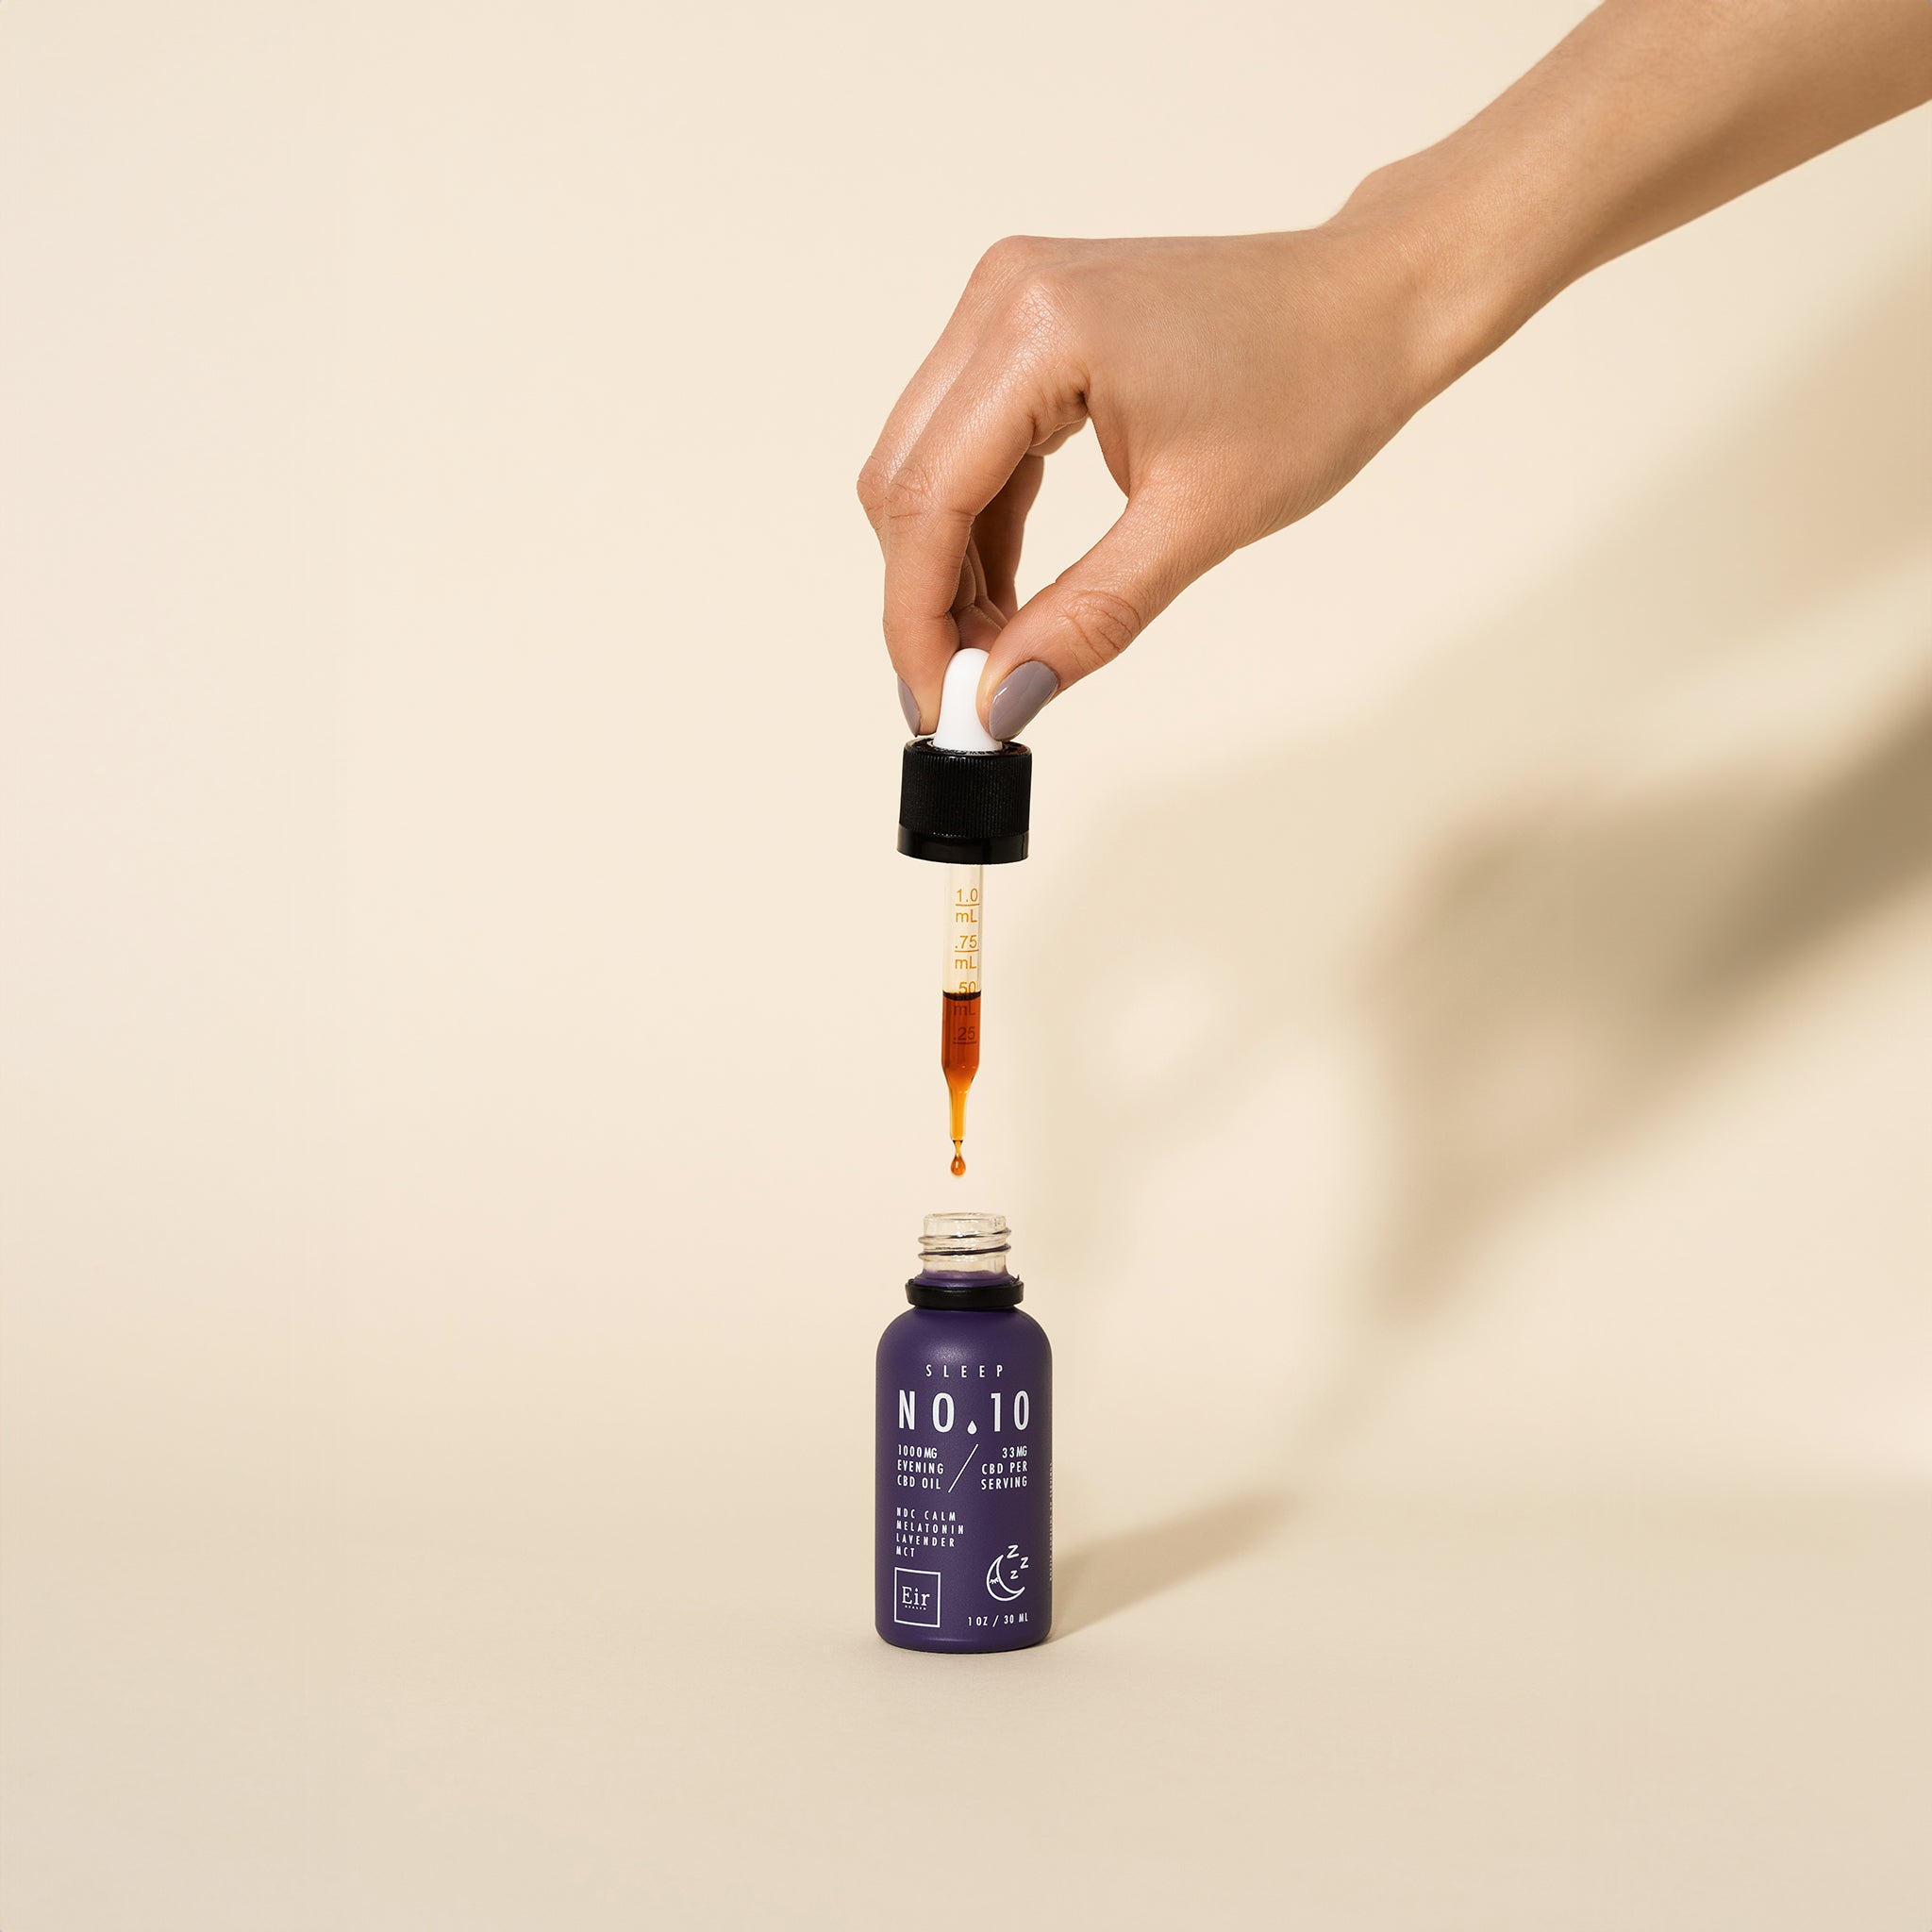 Dłoń trzymająca zakraplacz nad fioletową butelką olejku CBD Eir No. 10, z kroplą oleju zawieszoną na końcu, na neutralnym tle.